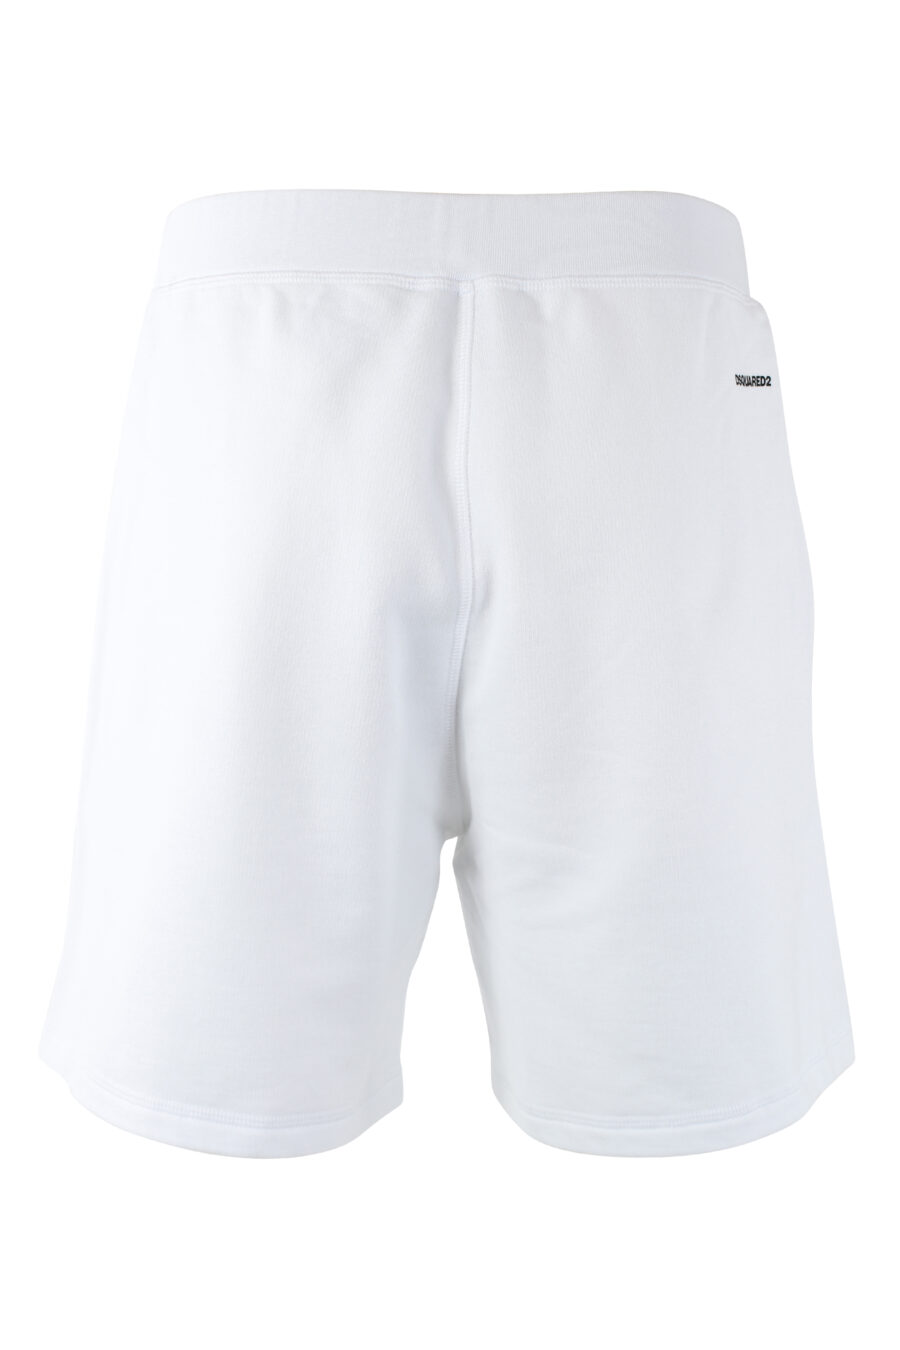 Pantalón de chándal blanco corto "relax fit" - IMG 9721